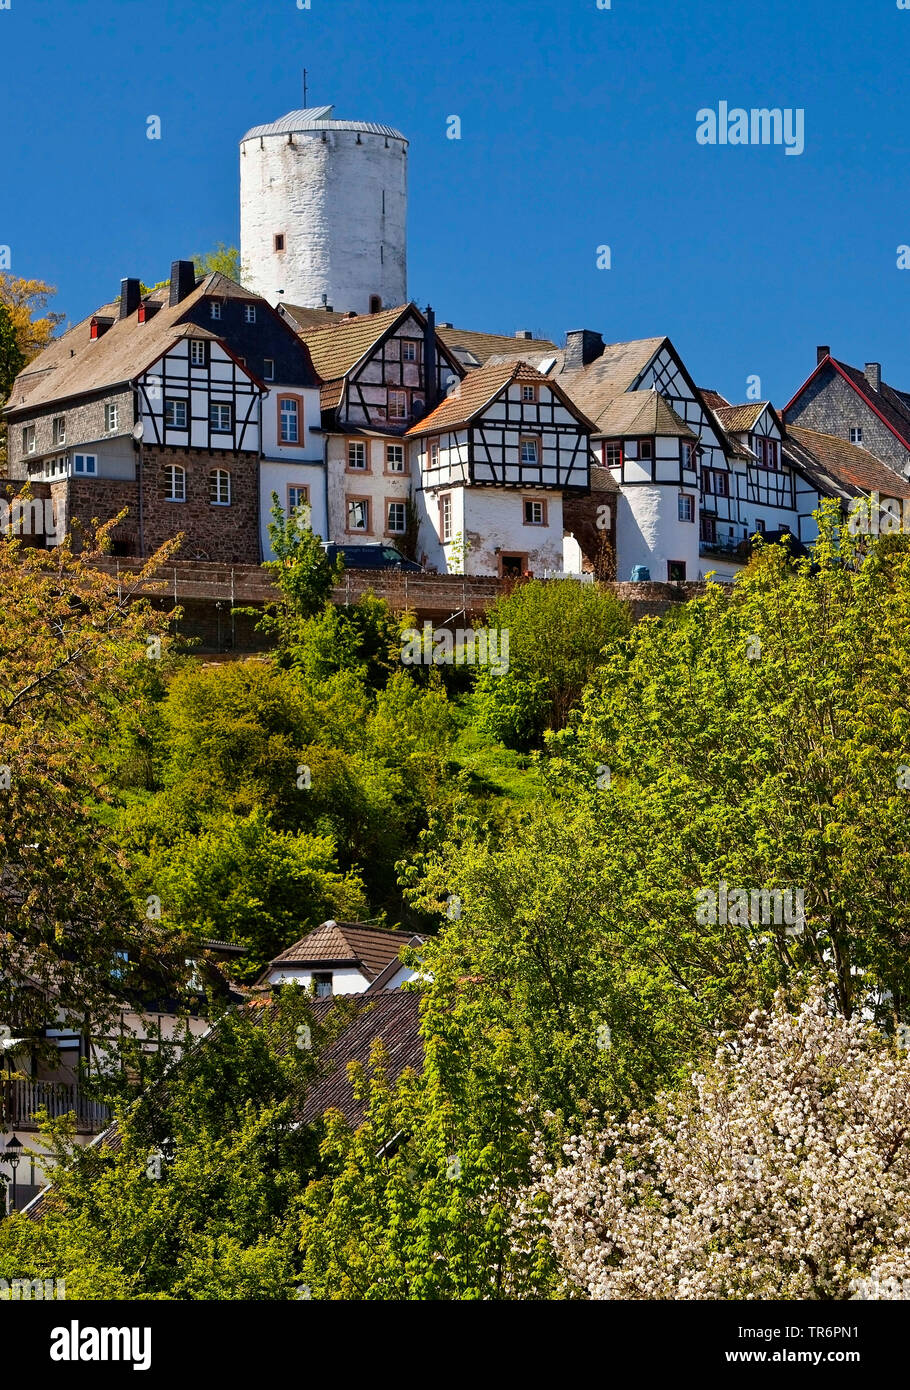 Maisons à colombages et le château de Reifferscheid, Allemagne, Rhénanie-Palatinat, Eifel, Reifferscheid Banque D'Images